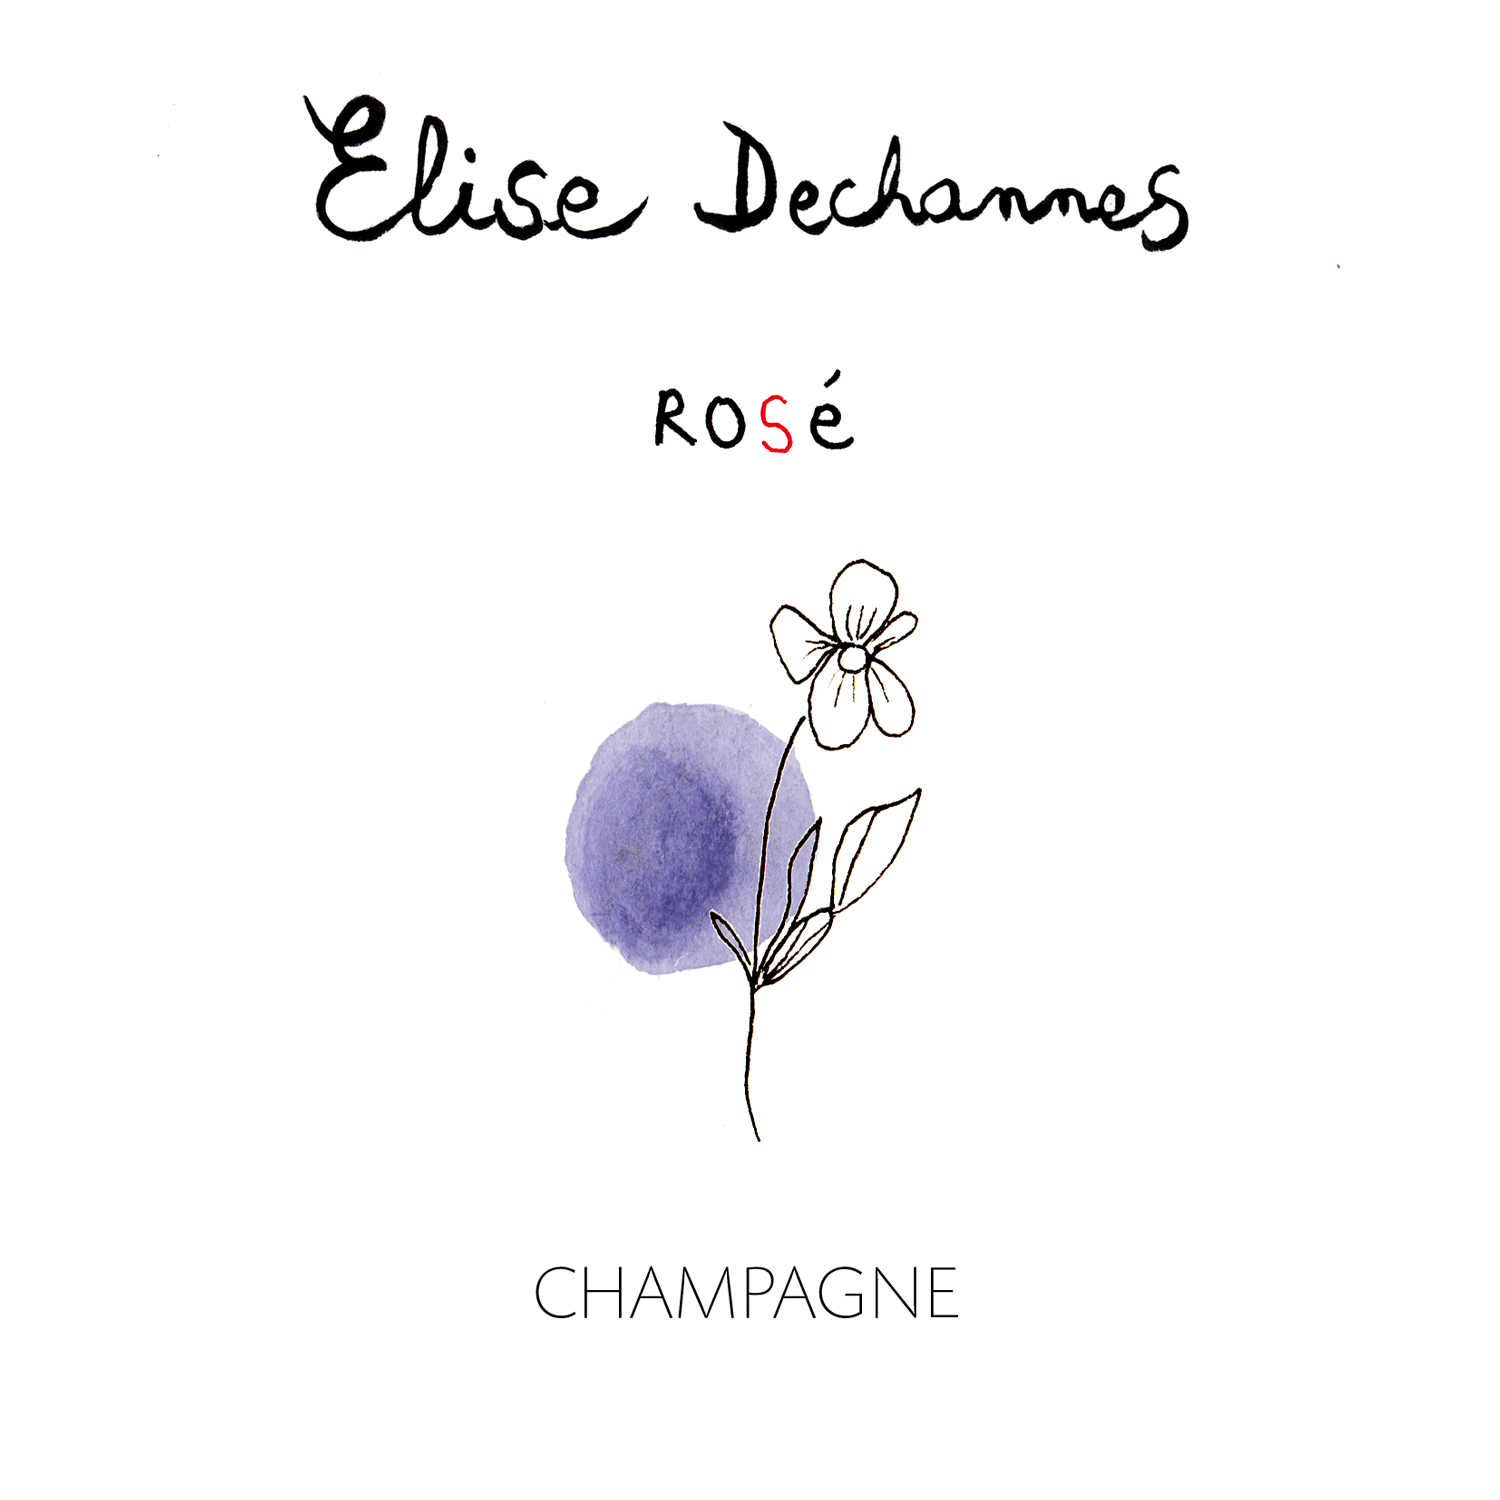 Champagne Elise Dechannes: Rosé